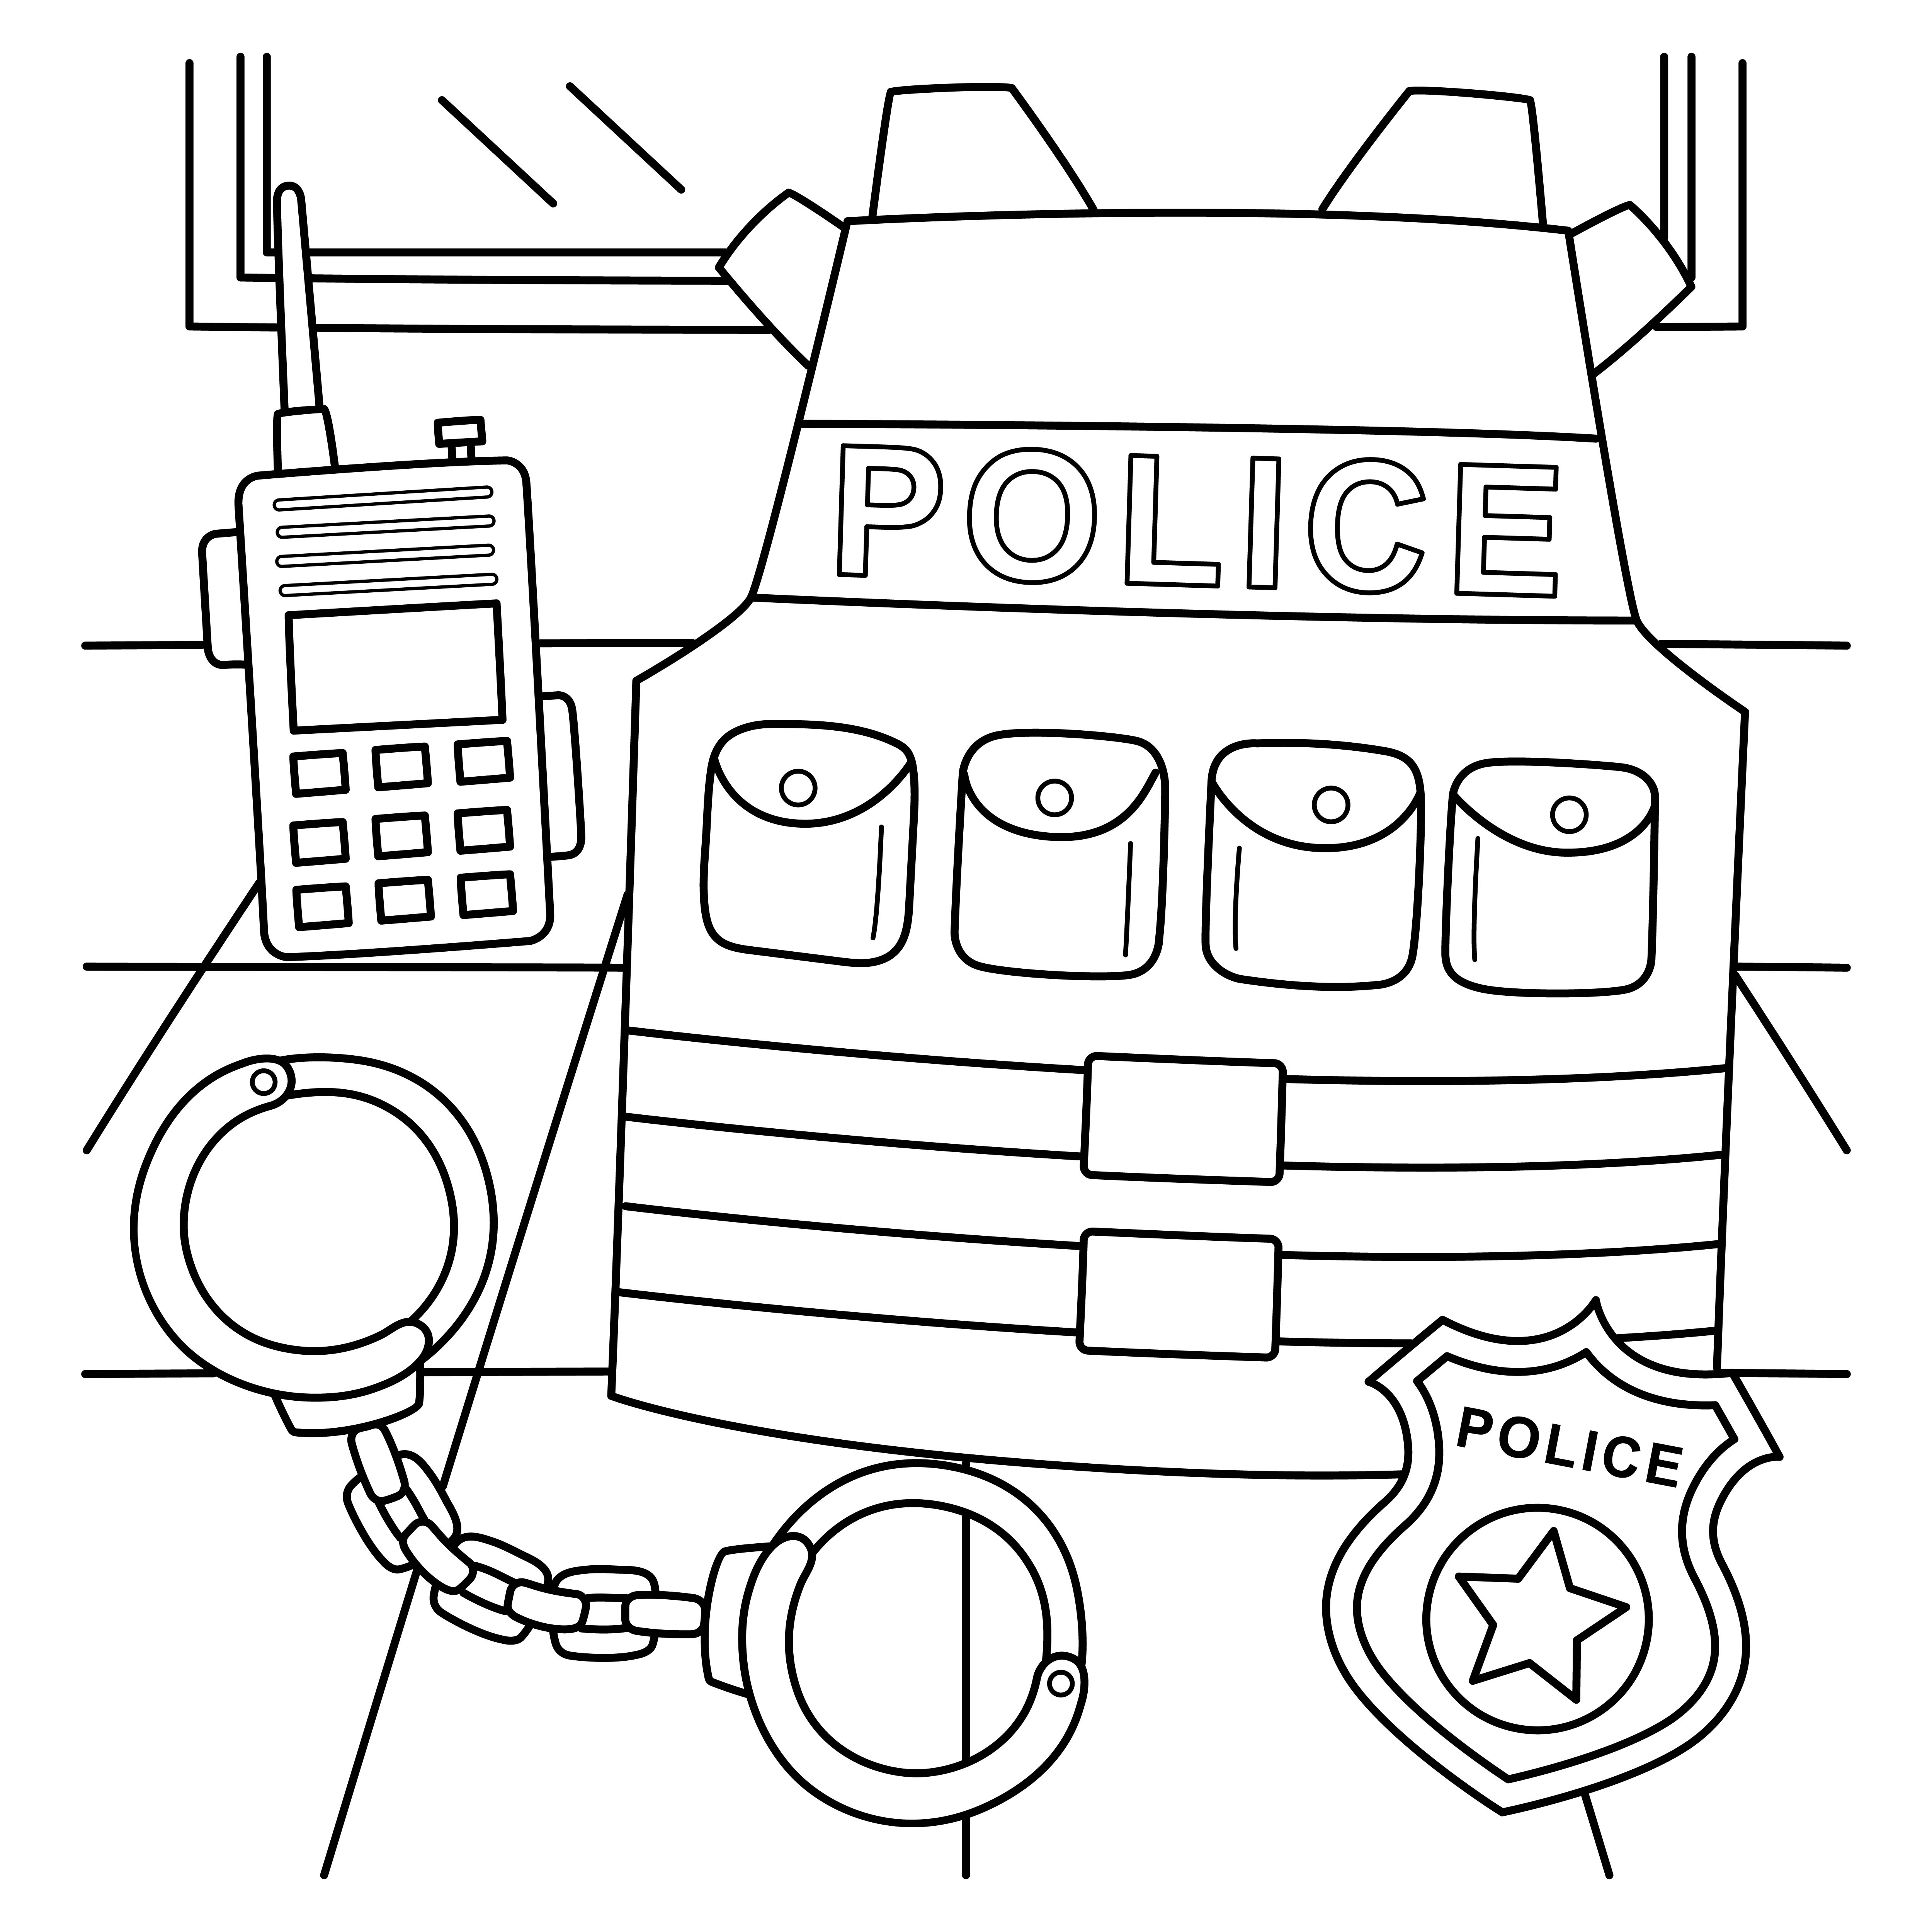 Раскраска полицейский бронежилет и оснащение формата А4 в высоком качестве